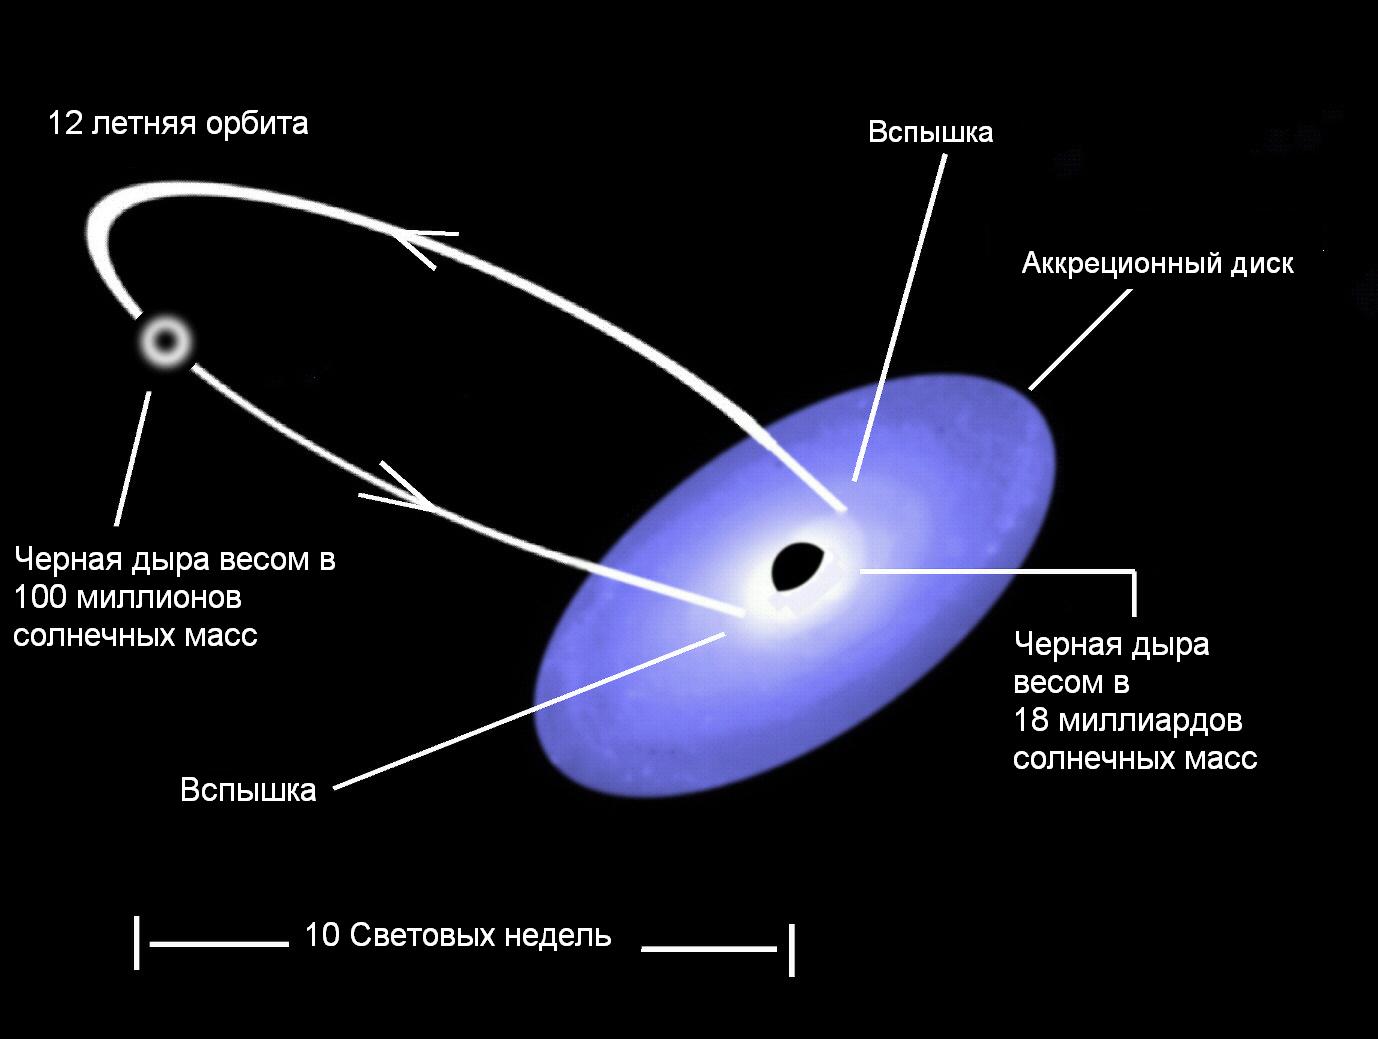 Схема уникальной системы OJ287 пары сверхмассивных черных дыр